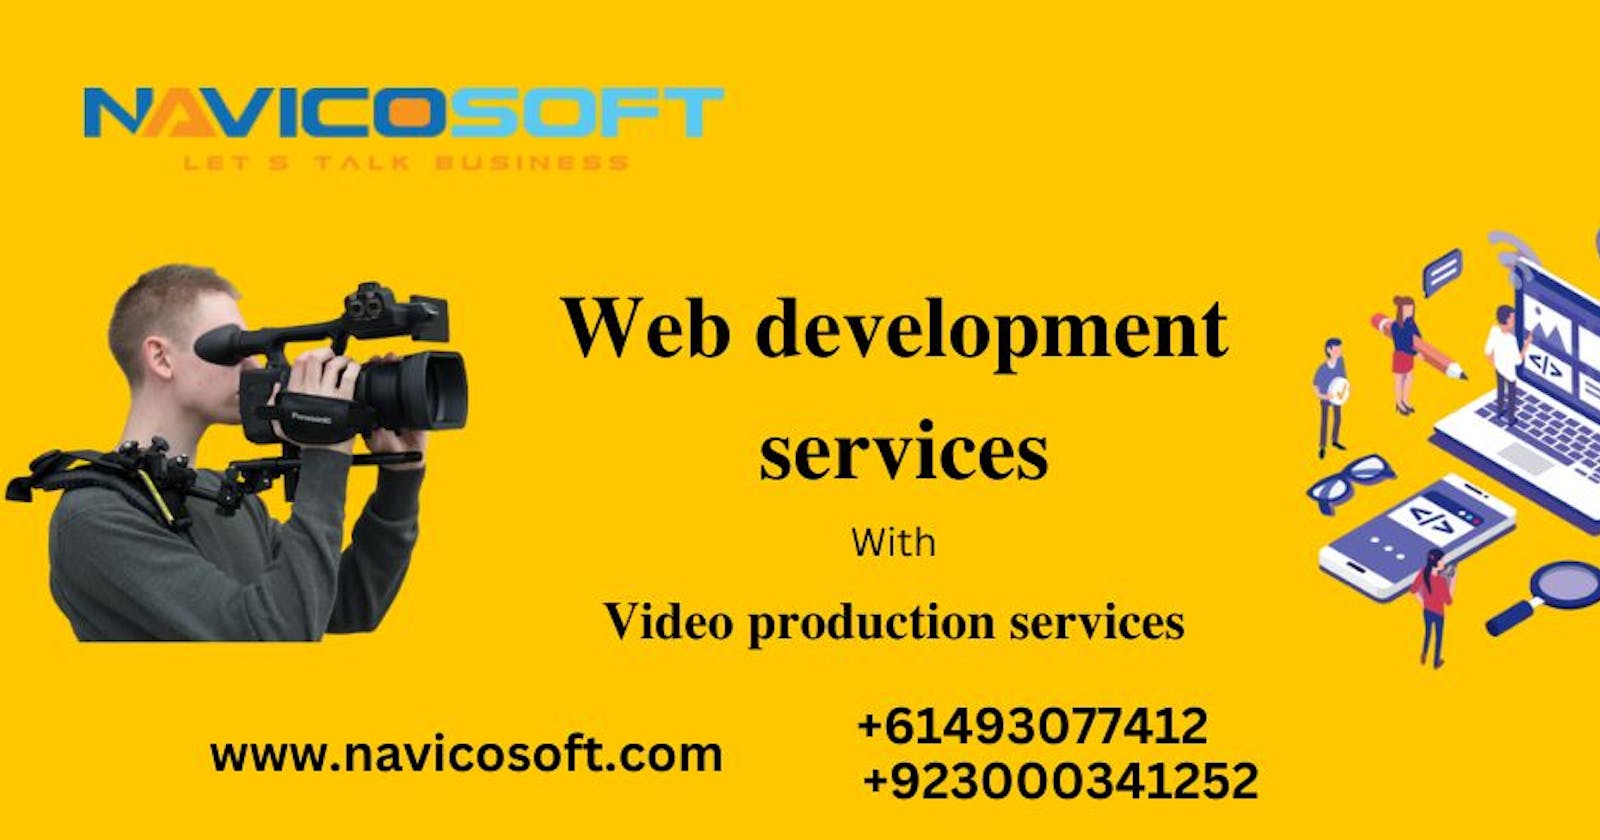 Web development services provider